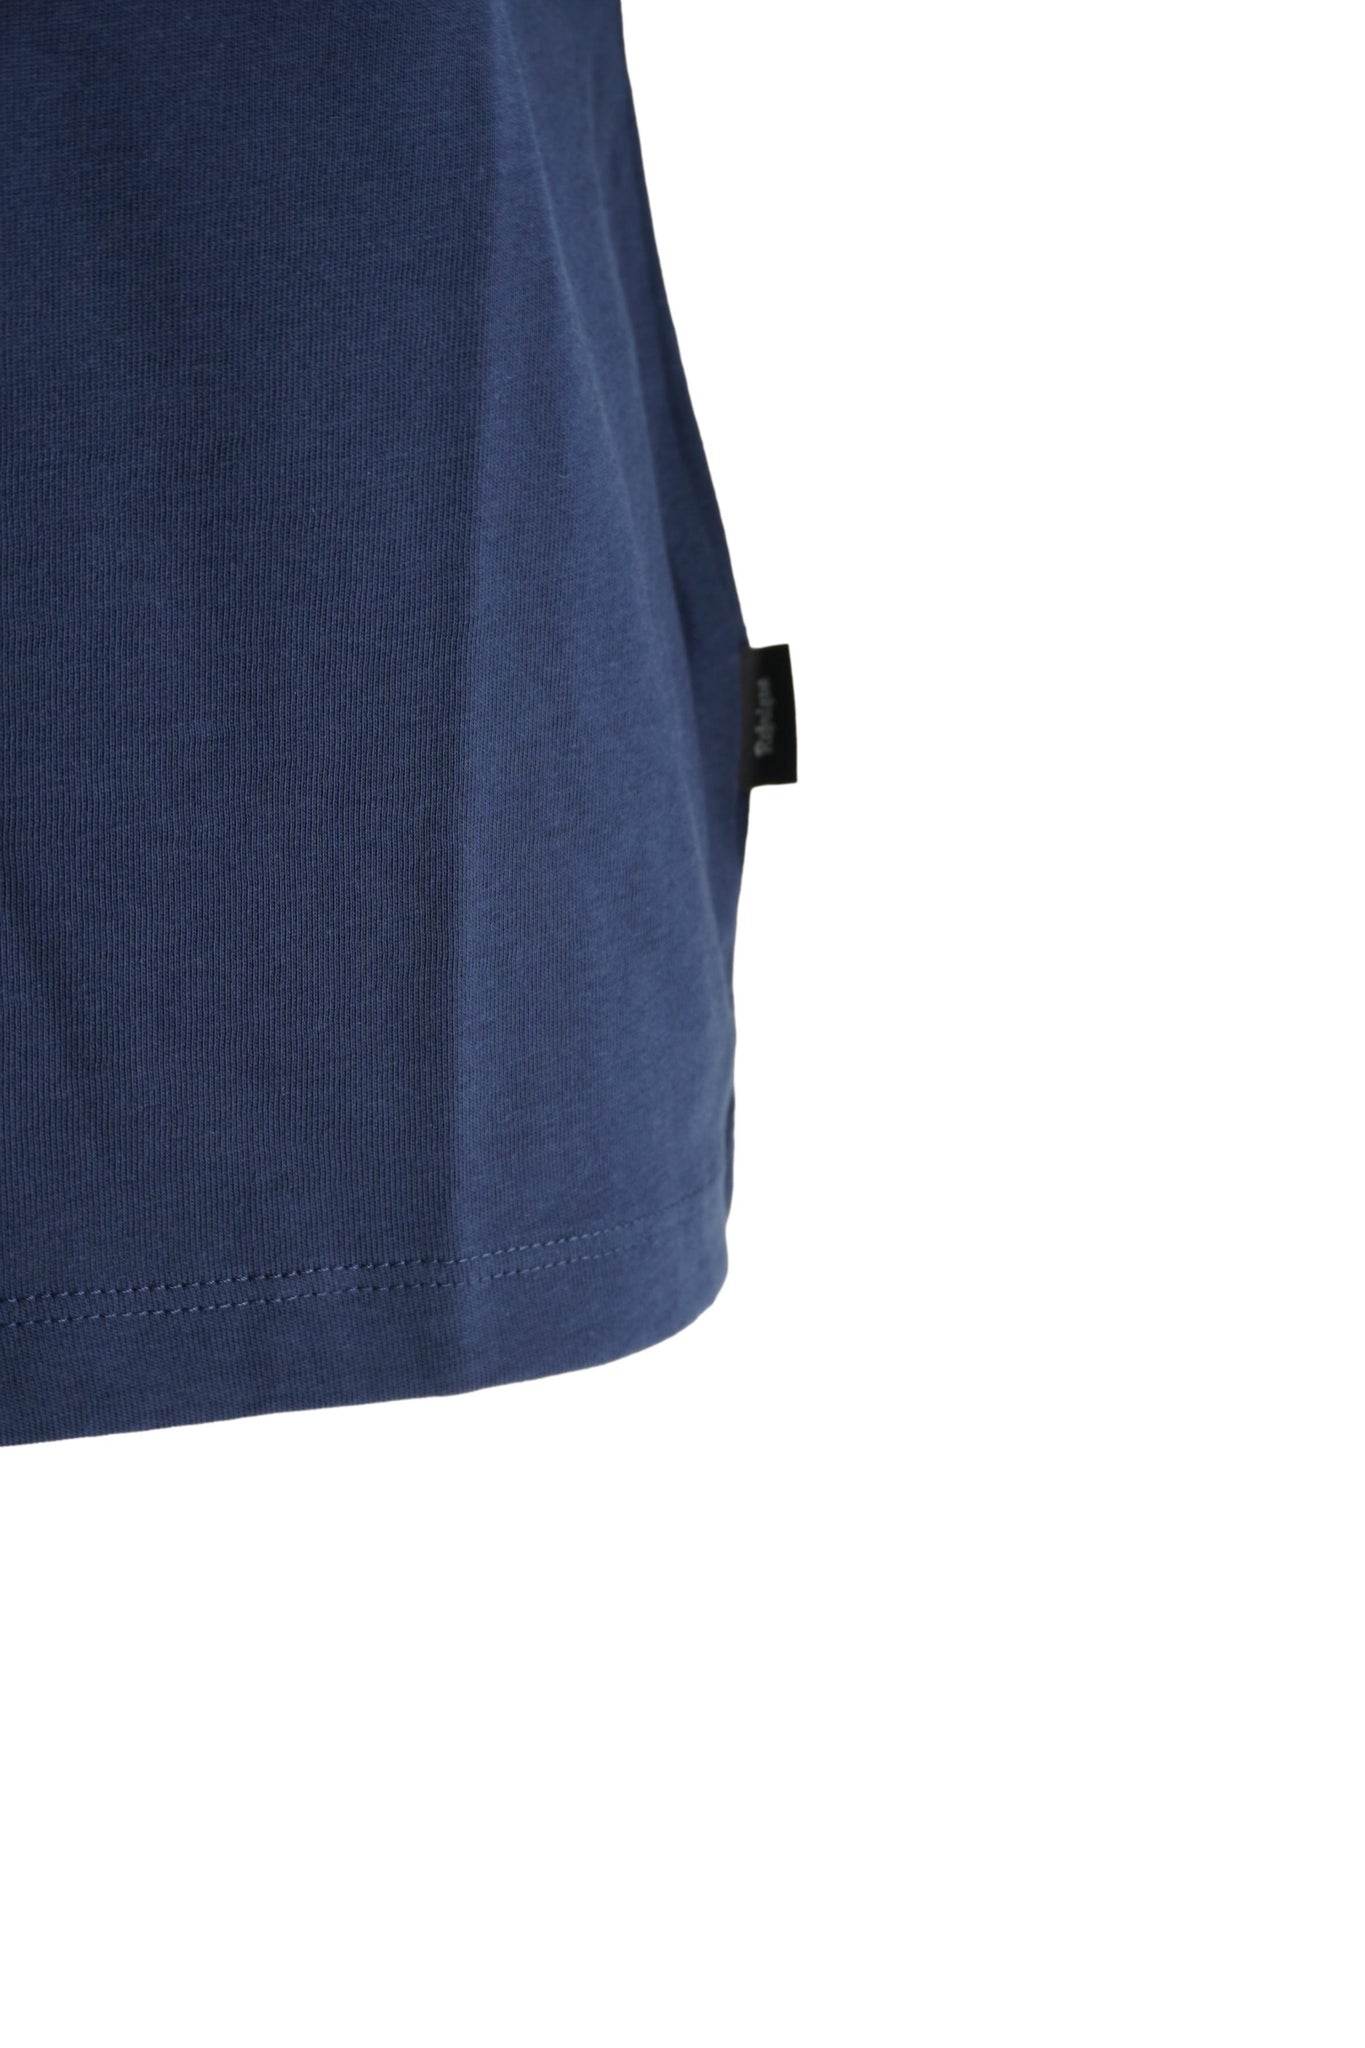 T-Shirt Girocollo con Logo / Blu - Ideal Moda